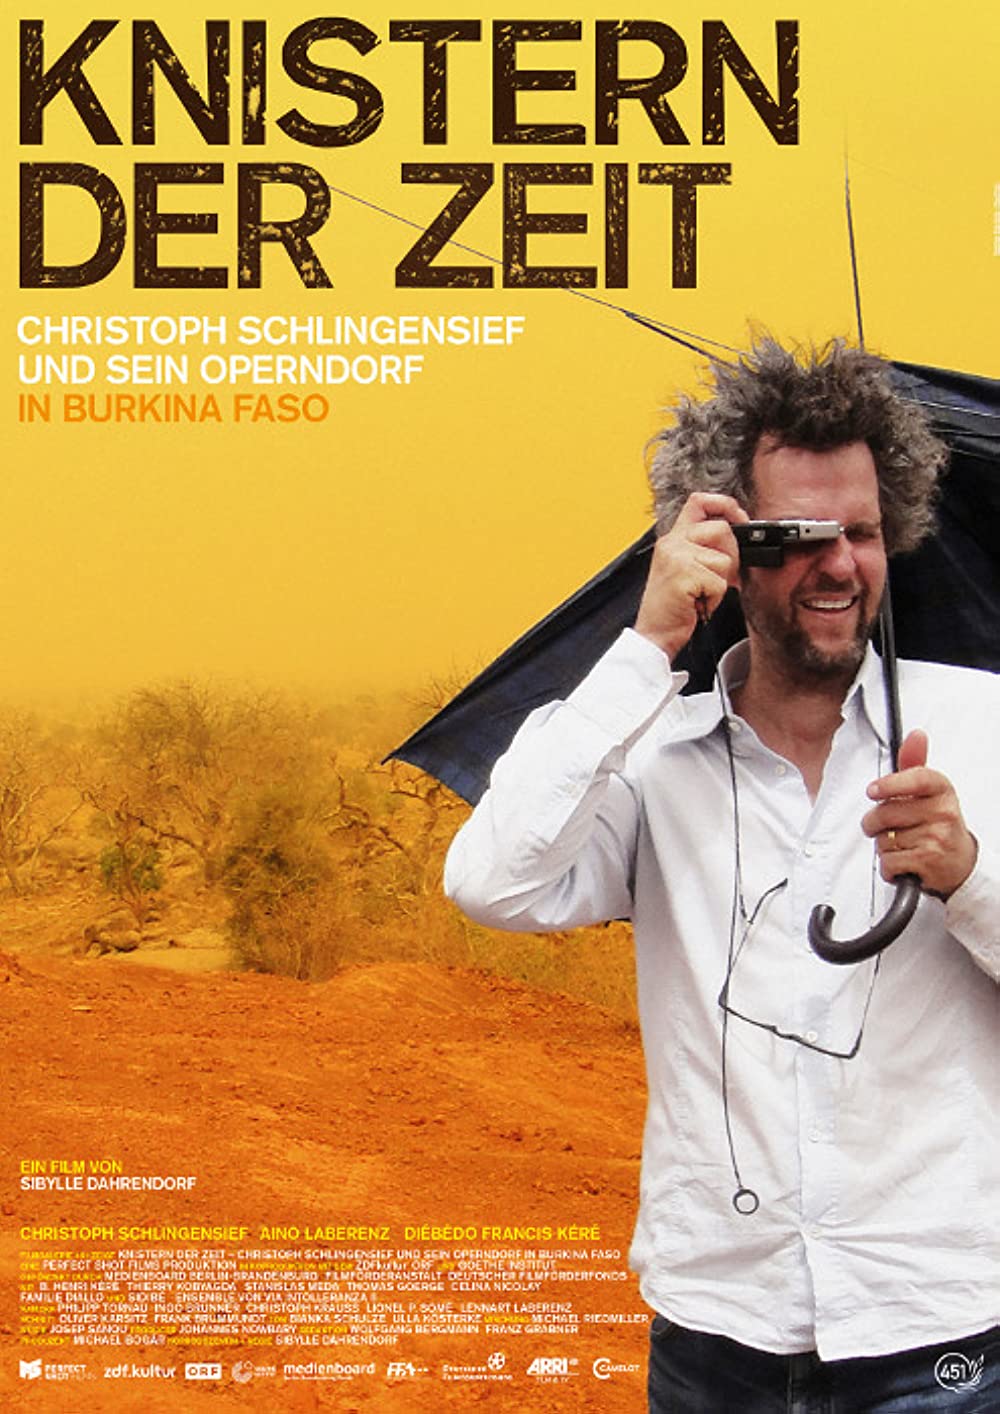 Filmbeschreibung zu Knistern der Zeit - Christoph Schlingensief und sein Operndorf in Burkina Faso